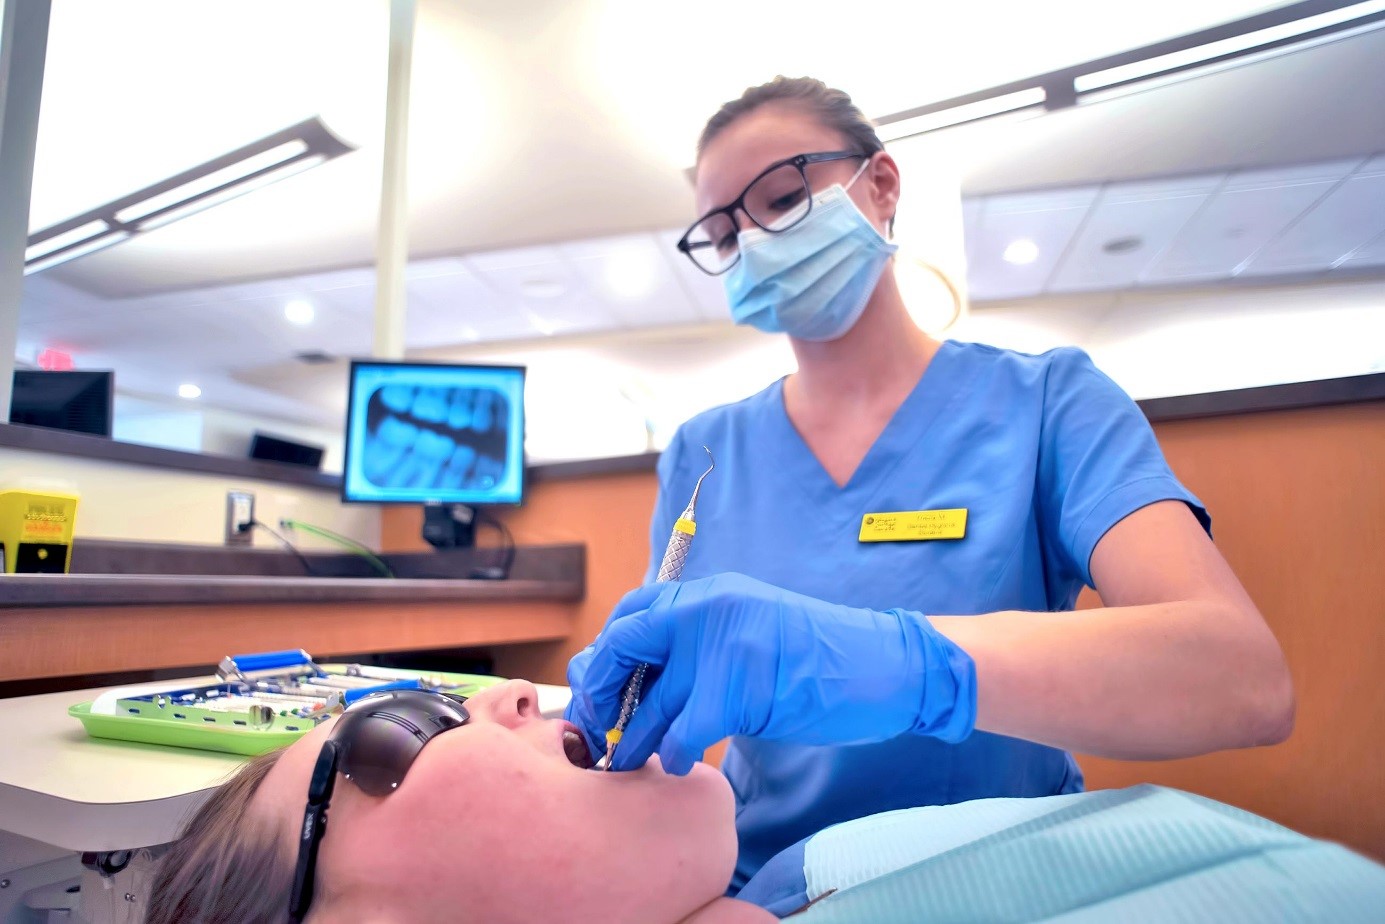 تحصیل دندانپزشکی در کانادا چه شرایطی دارد؟ پاسخ به سوالات شما